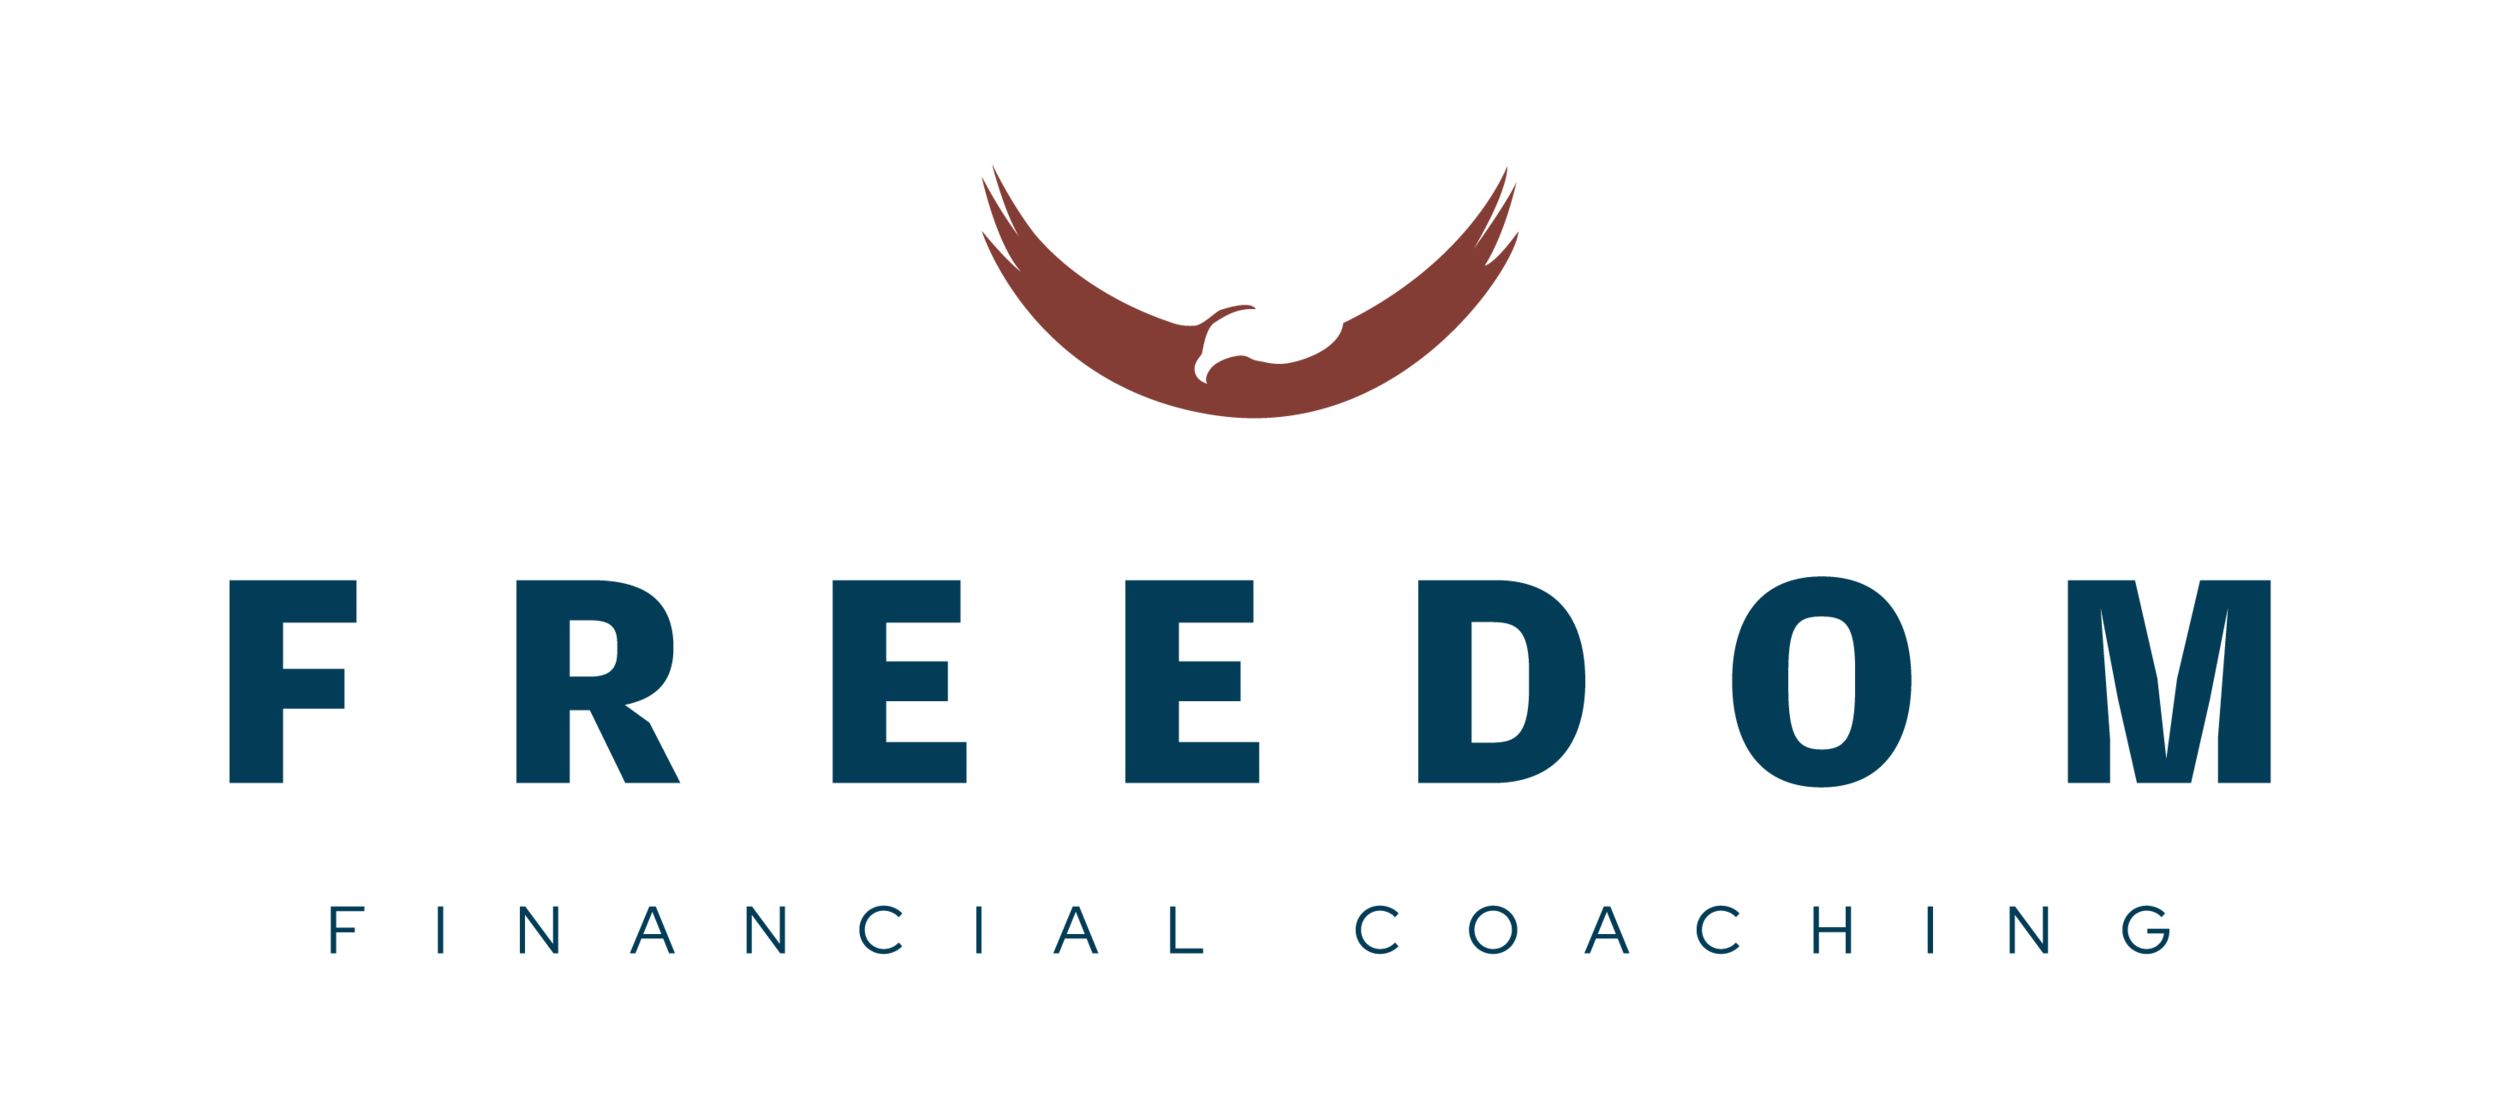 Freedom Financial Coaching